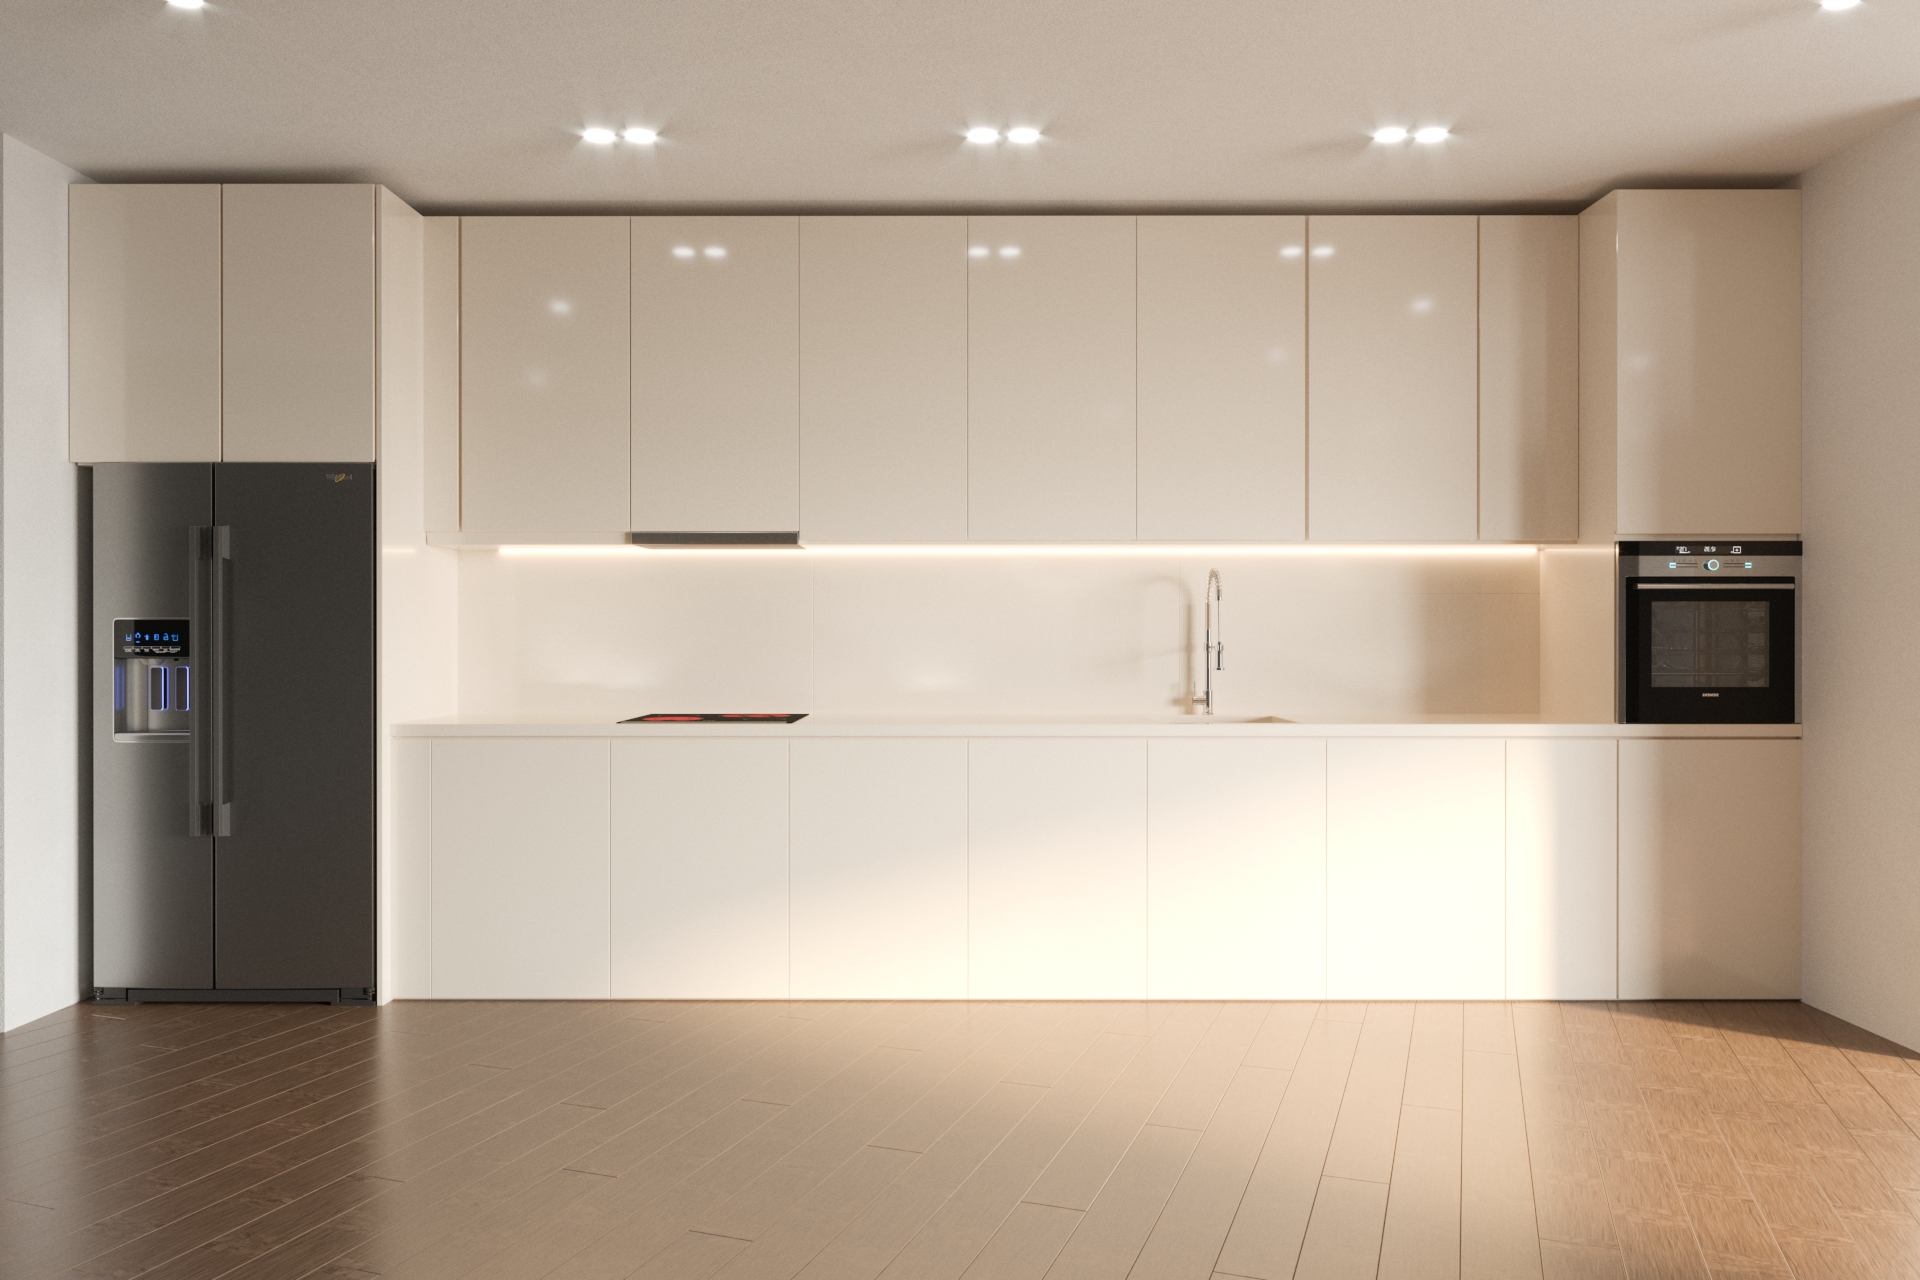 interior residential kitchen